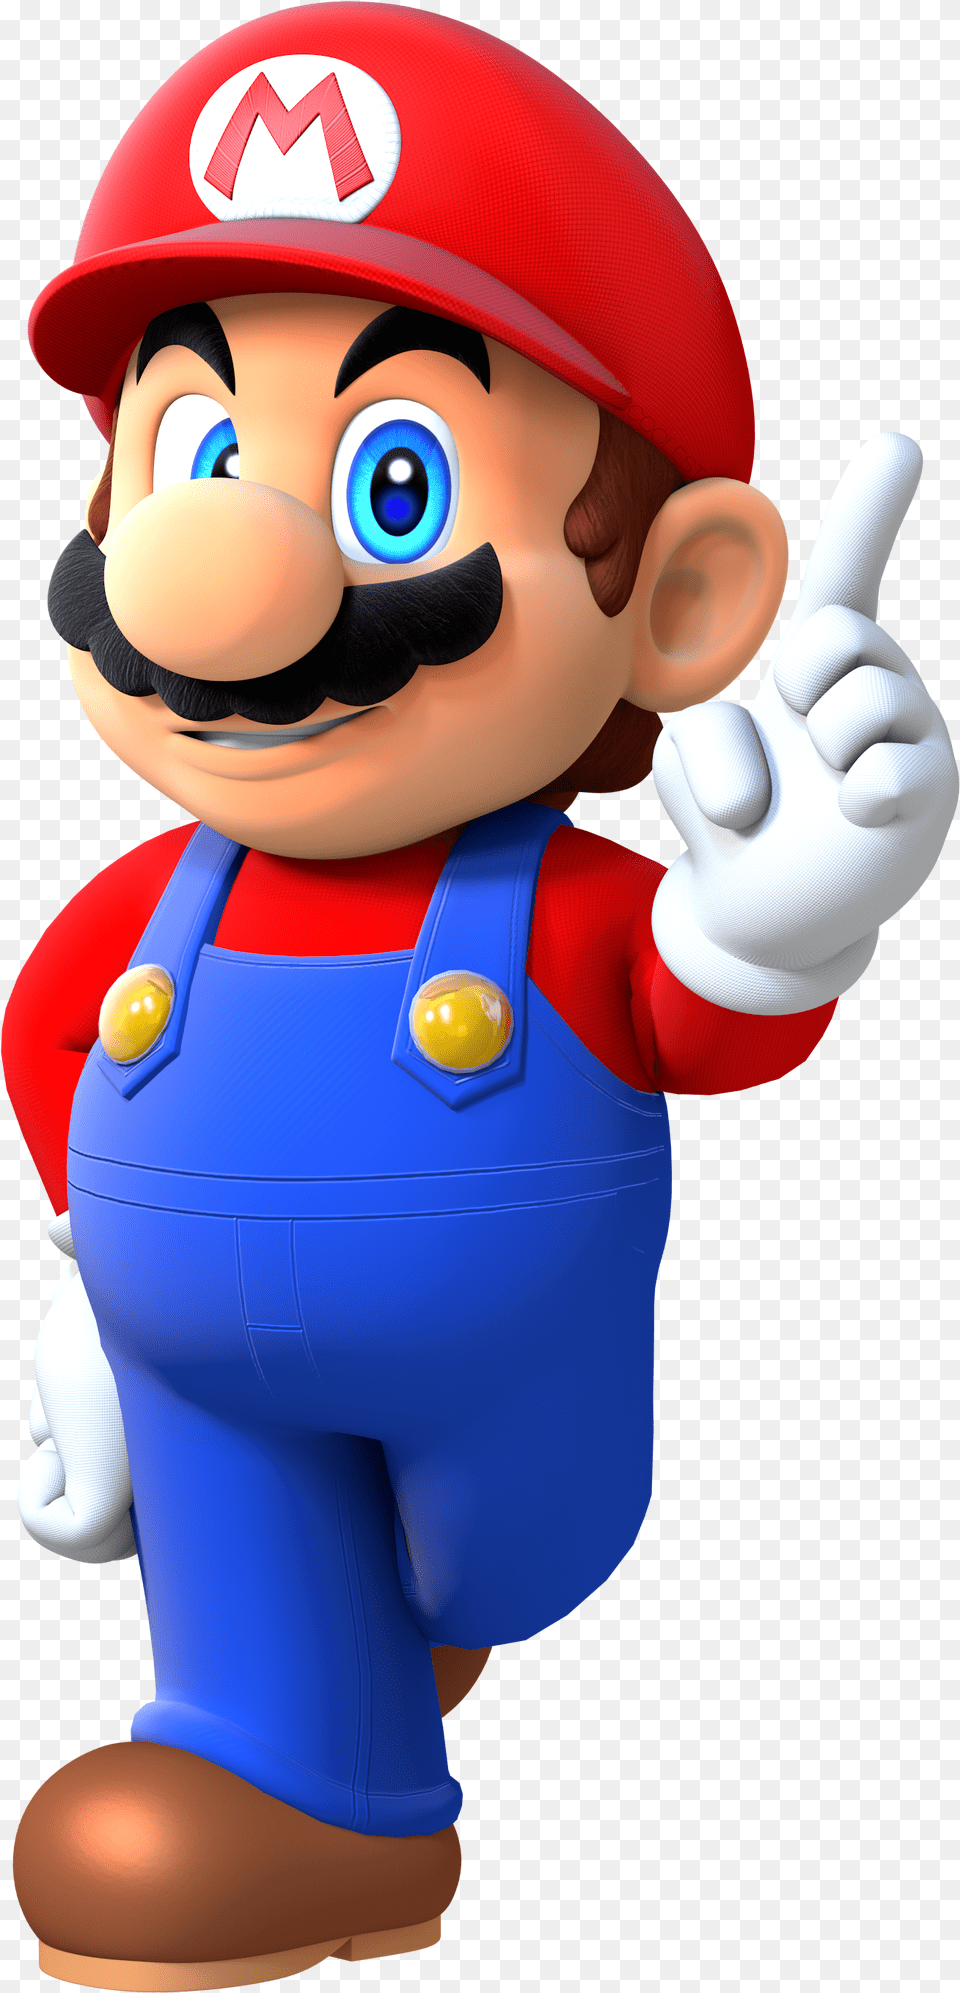 Artsuper Mario Render Mario Series, Baby, Person, Game, Super Mario Free Png Download